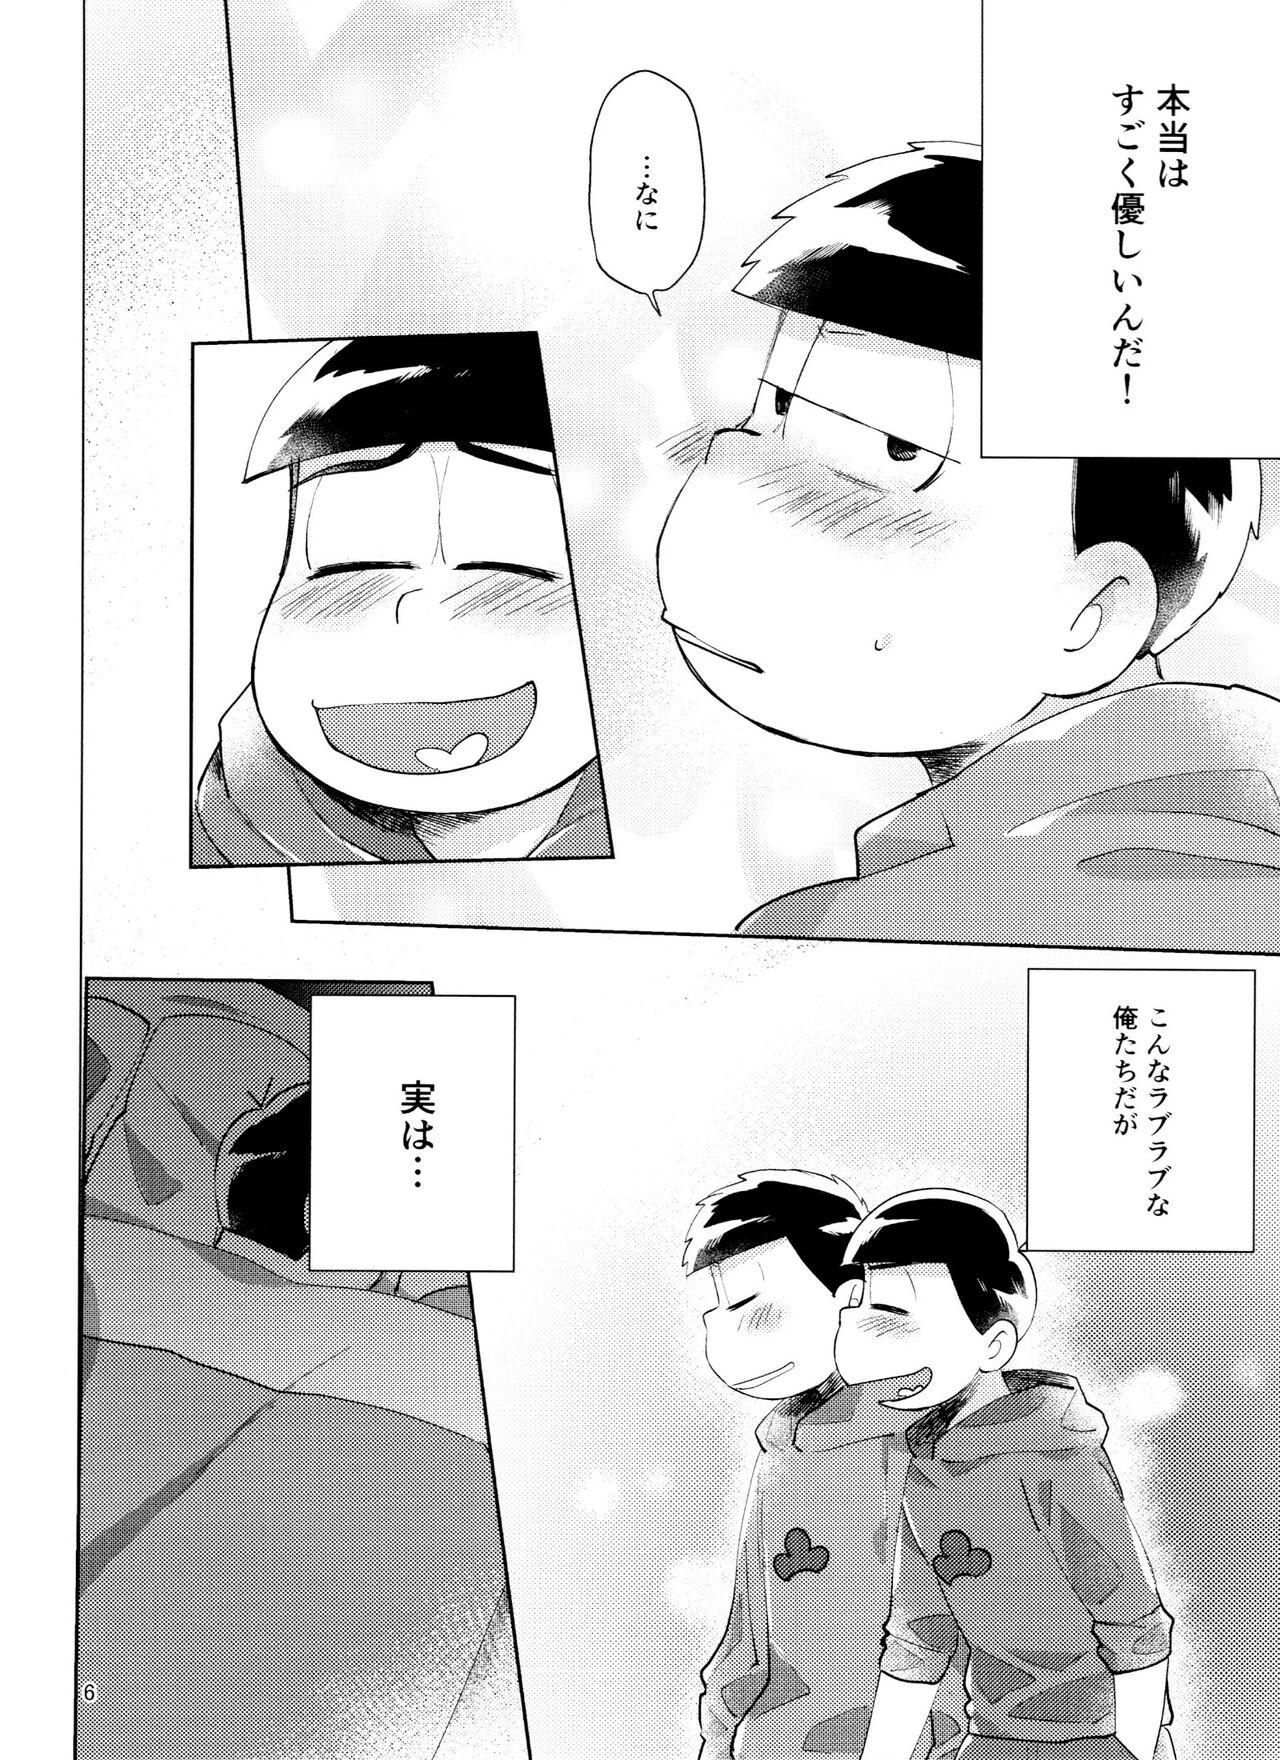 Pasivo Osomatsu-san Nekasete Kure, Burazaa!! - Osomatsu san Show - Page 6